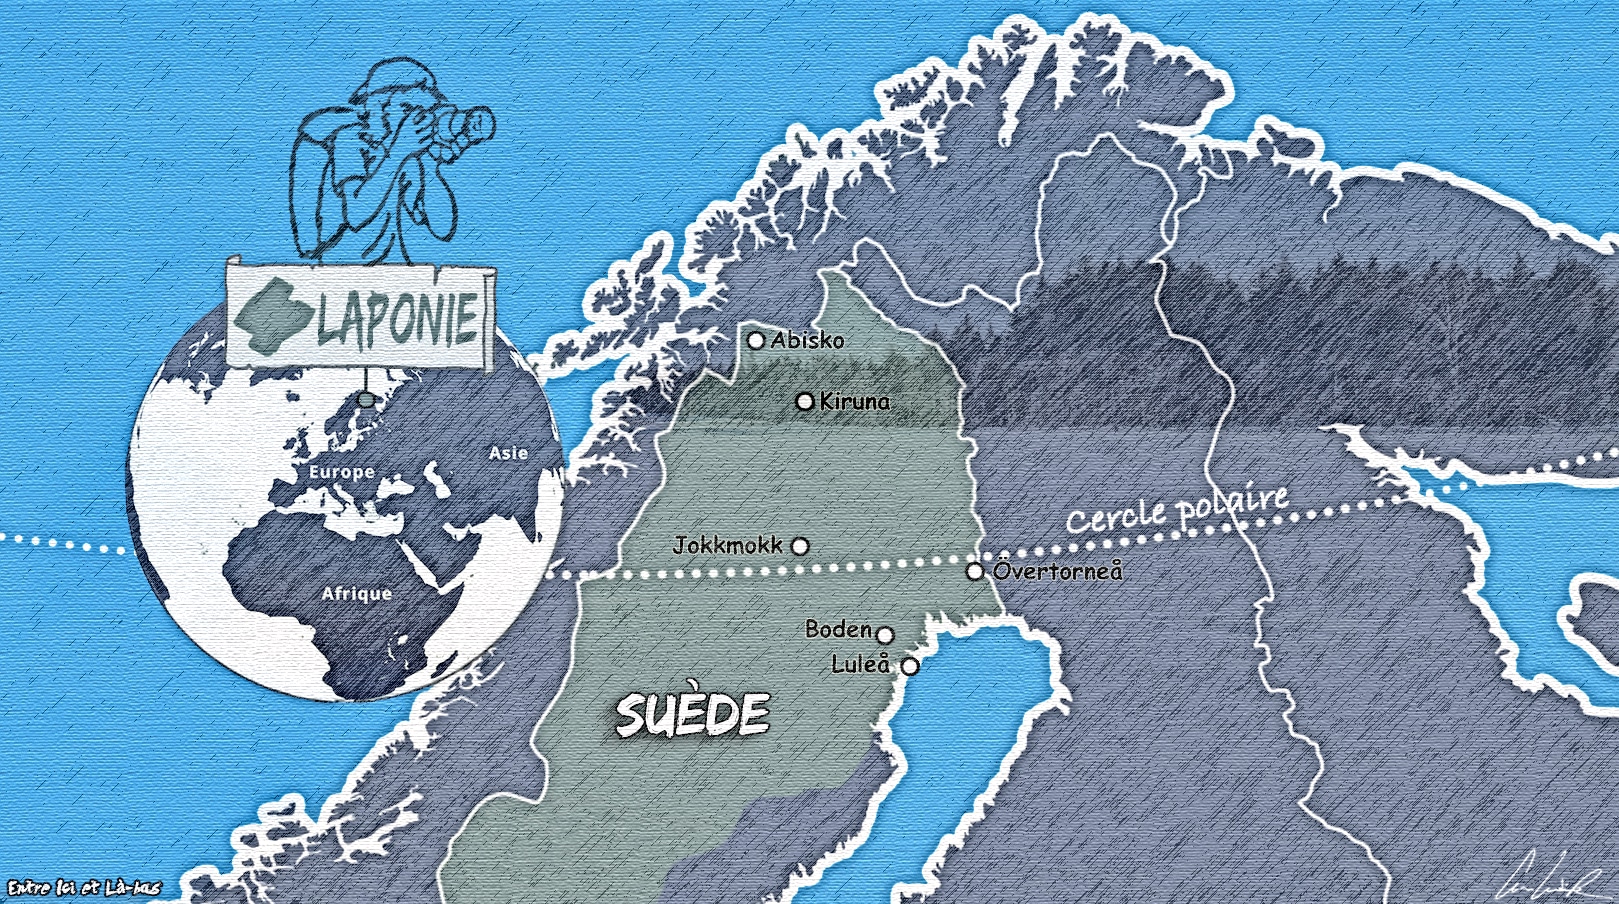 Voici une carte de la Laponie suédoise qui s'étend sur environ 110 000 km2 (soit un quart du pays) depuis Sorsele et Skellefteå, dans la région du Västerbotten, jusqu’aux confins nord de la Suède. La Laponie suédoise est délimitée par les frontières norvégienne et finlandaise au nord